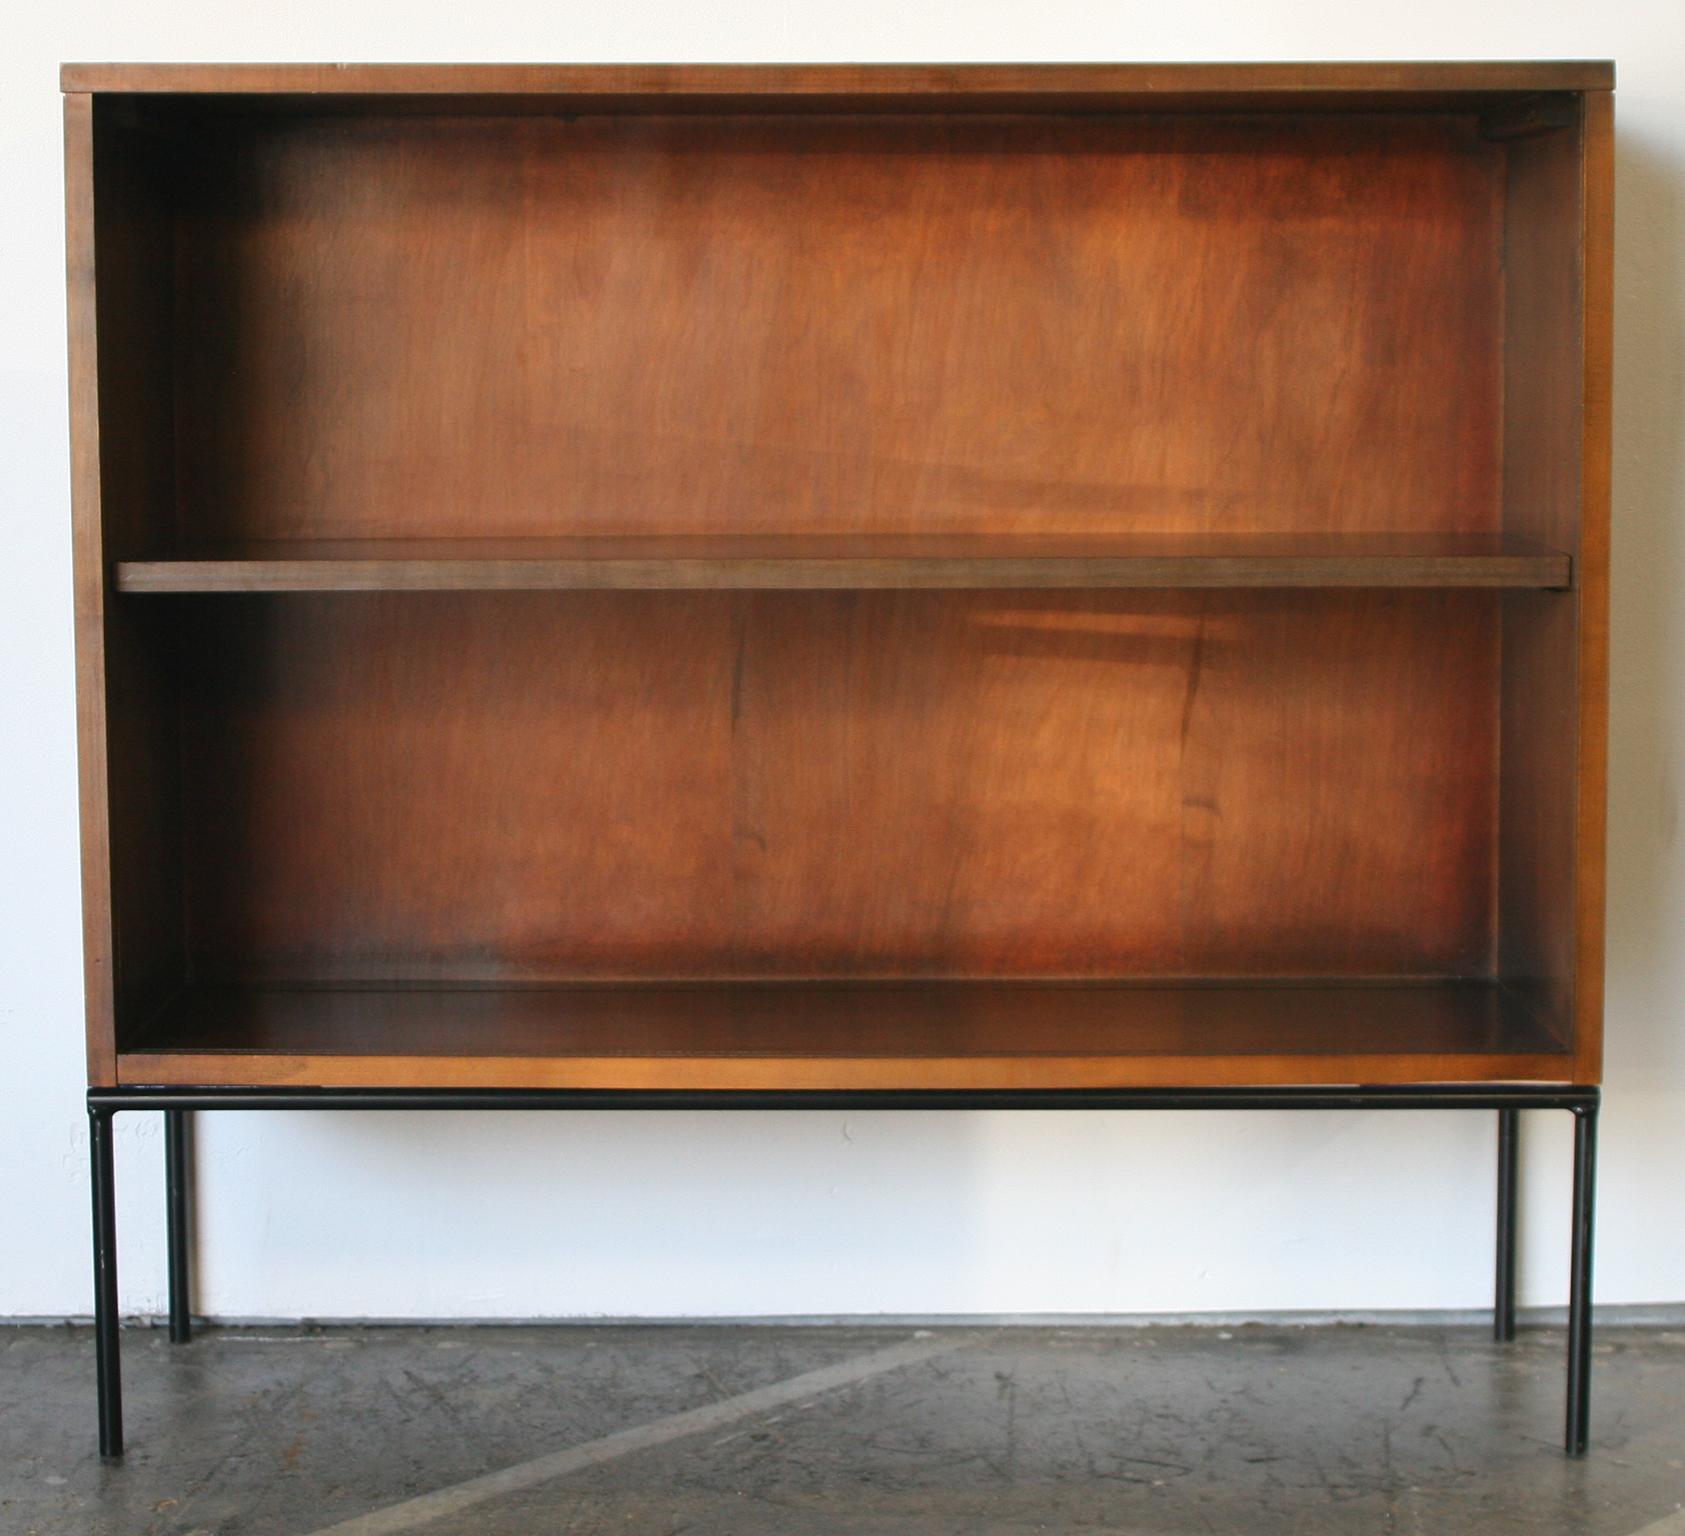 Midcentury Paul McCobb Single Bookcase #1515 Walnut Finish Glass Doors Iron Base 3